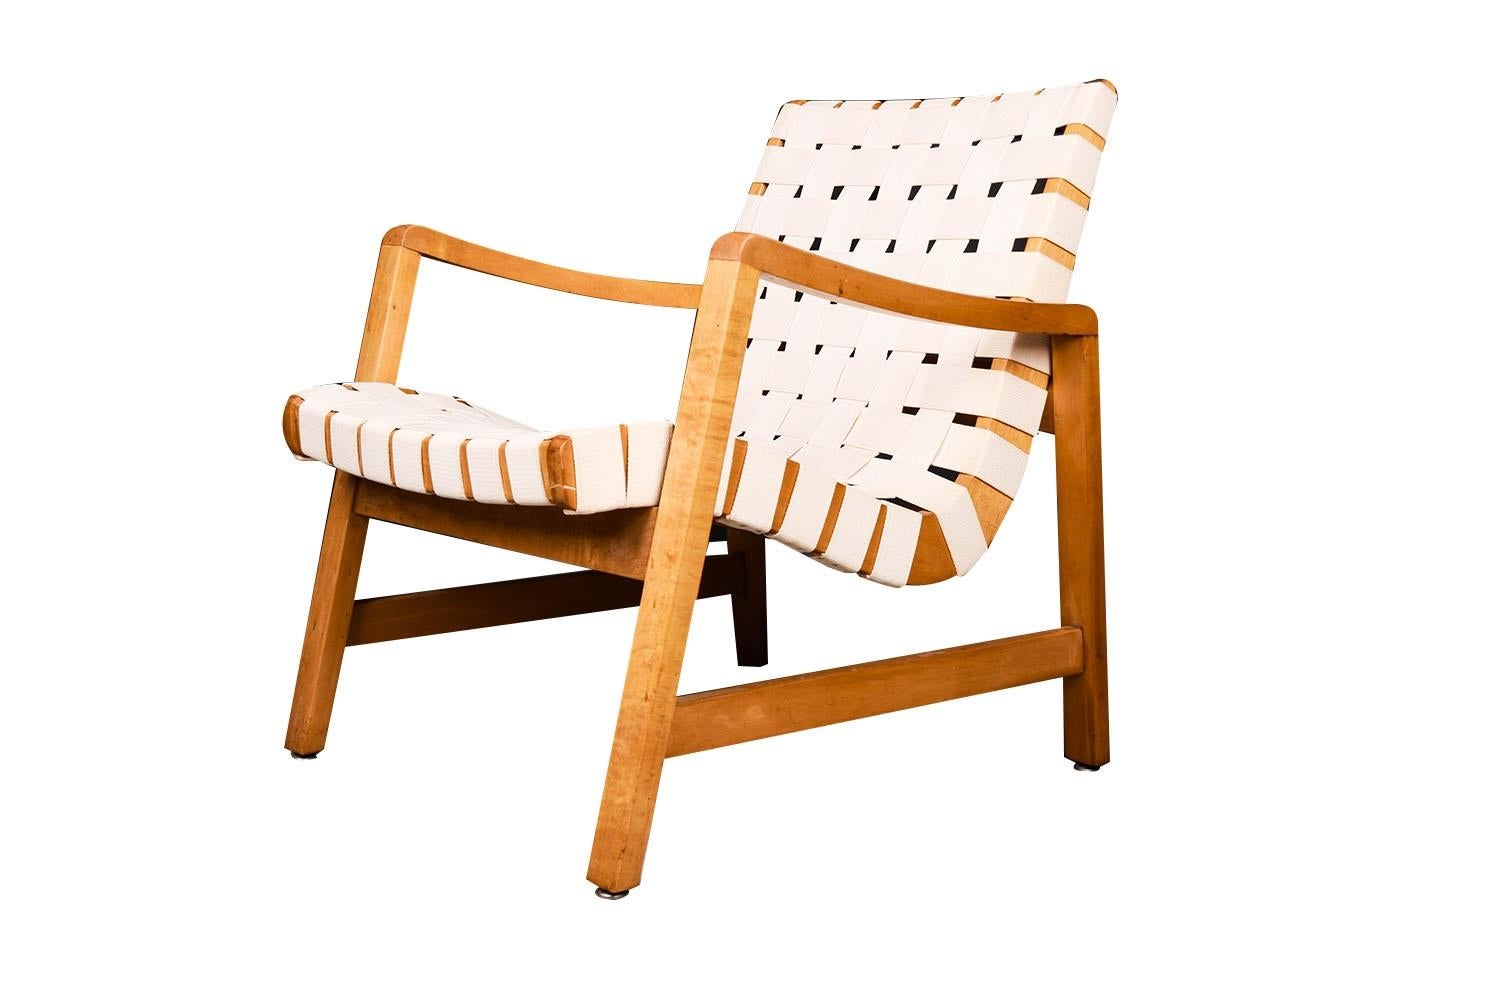 Un superbe fauteuil iconique en coton, à sangles, lounge, design 652W (1943) early edition, conçu par Jens Risom pour Knoll International. Le cadre est en érable massif et les sangles en coton tissé sont d'origine. C'est l'un des fauteuils les plus